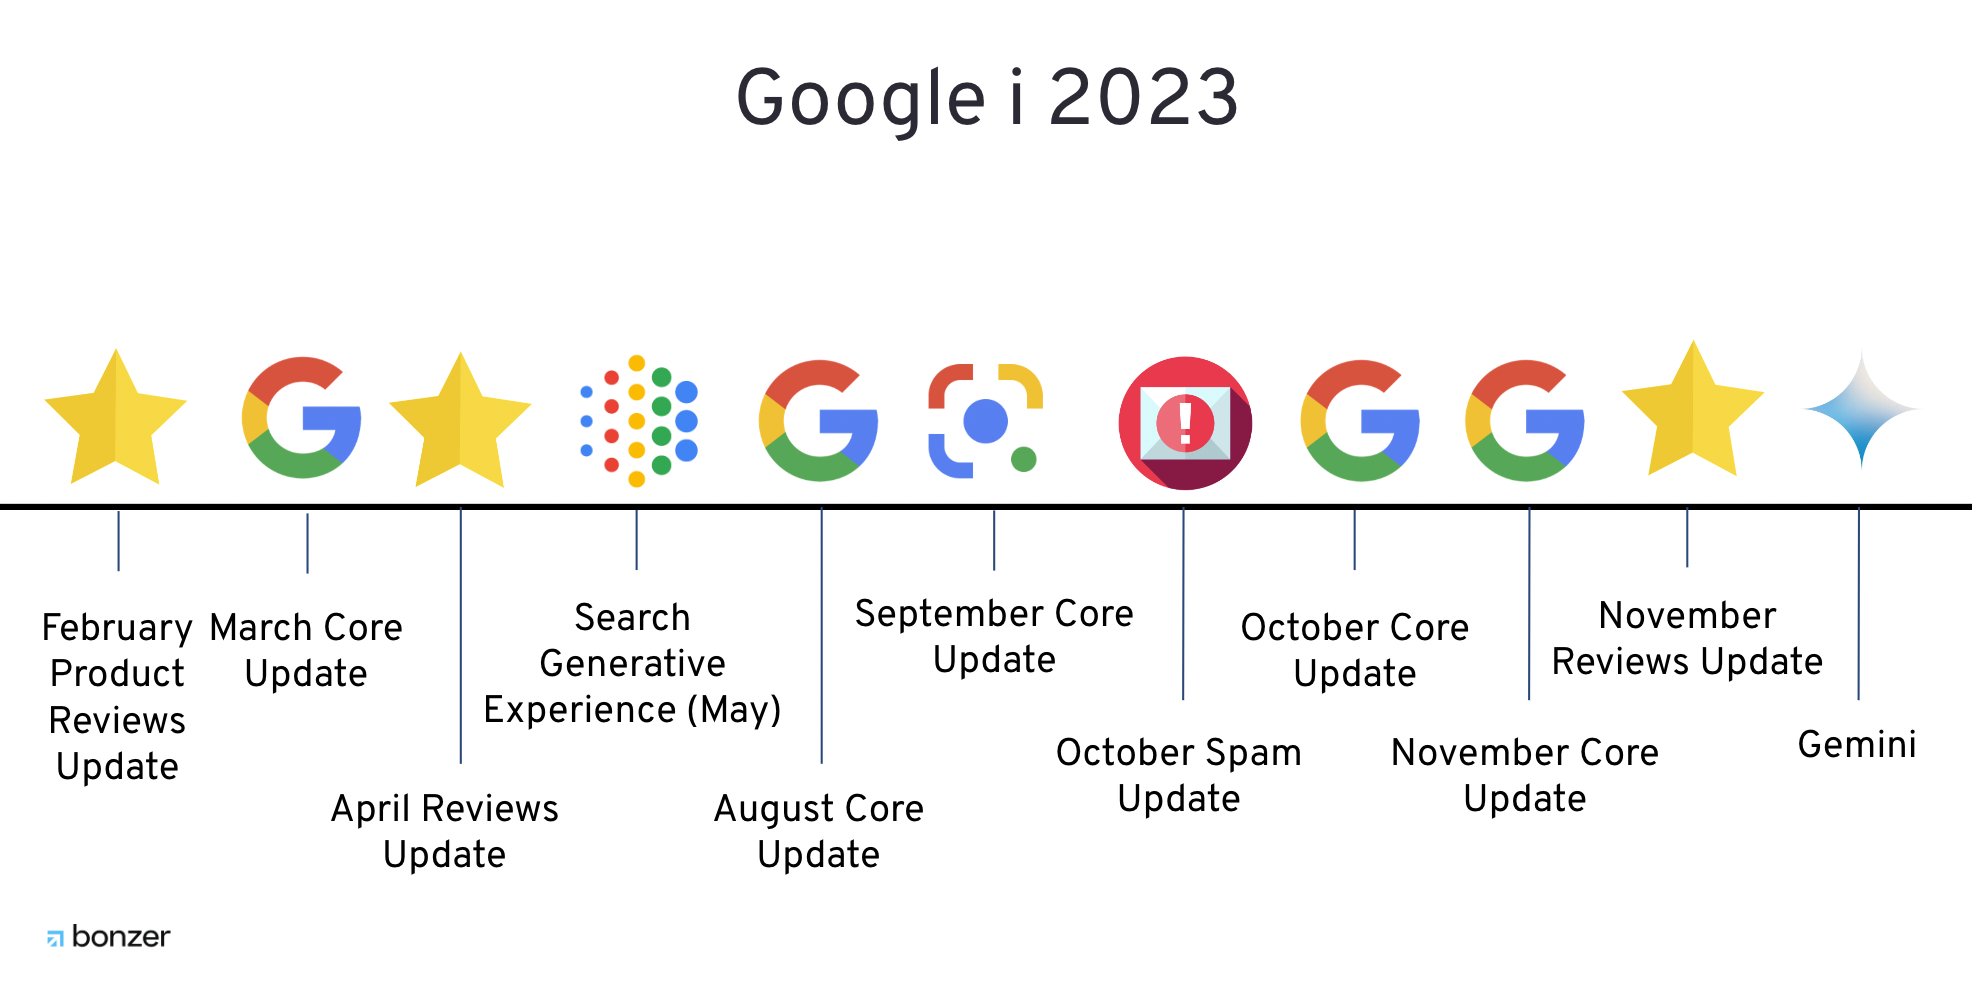 google i 2023